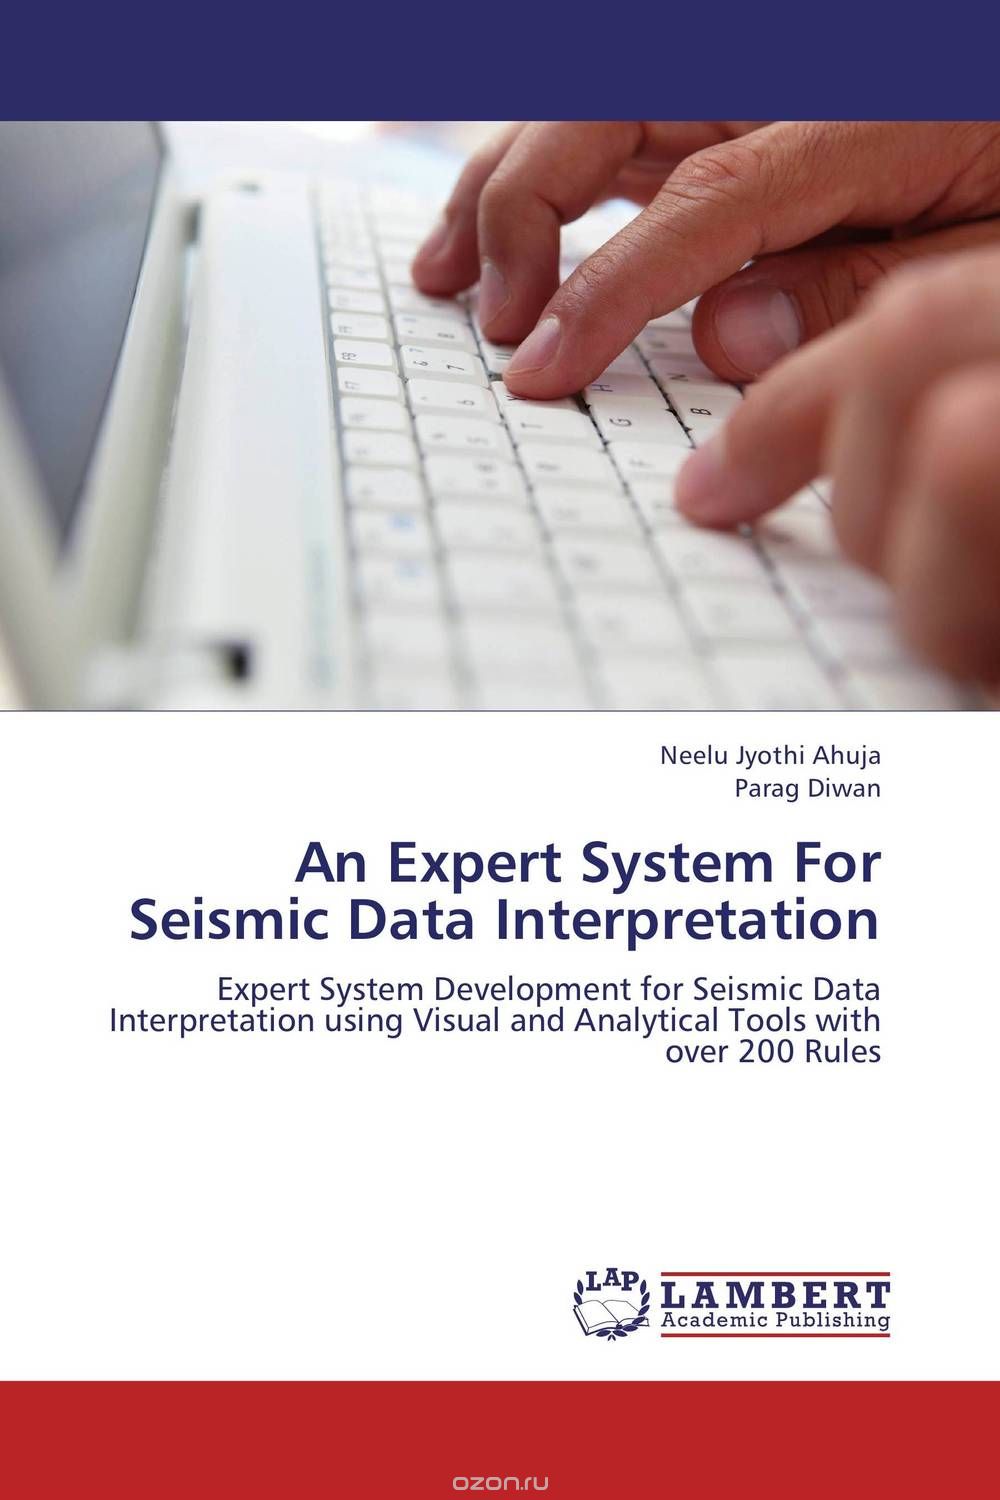 Скачать книгу "An Expert System For Seismic Data Interpretation"